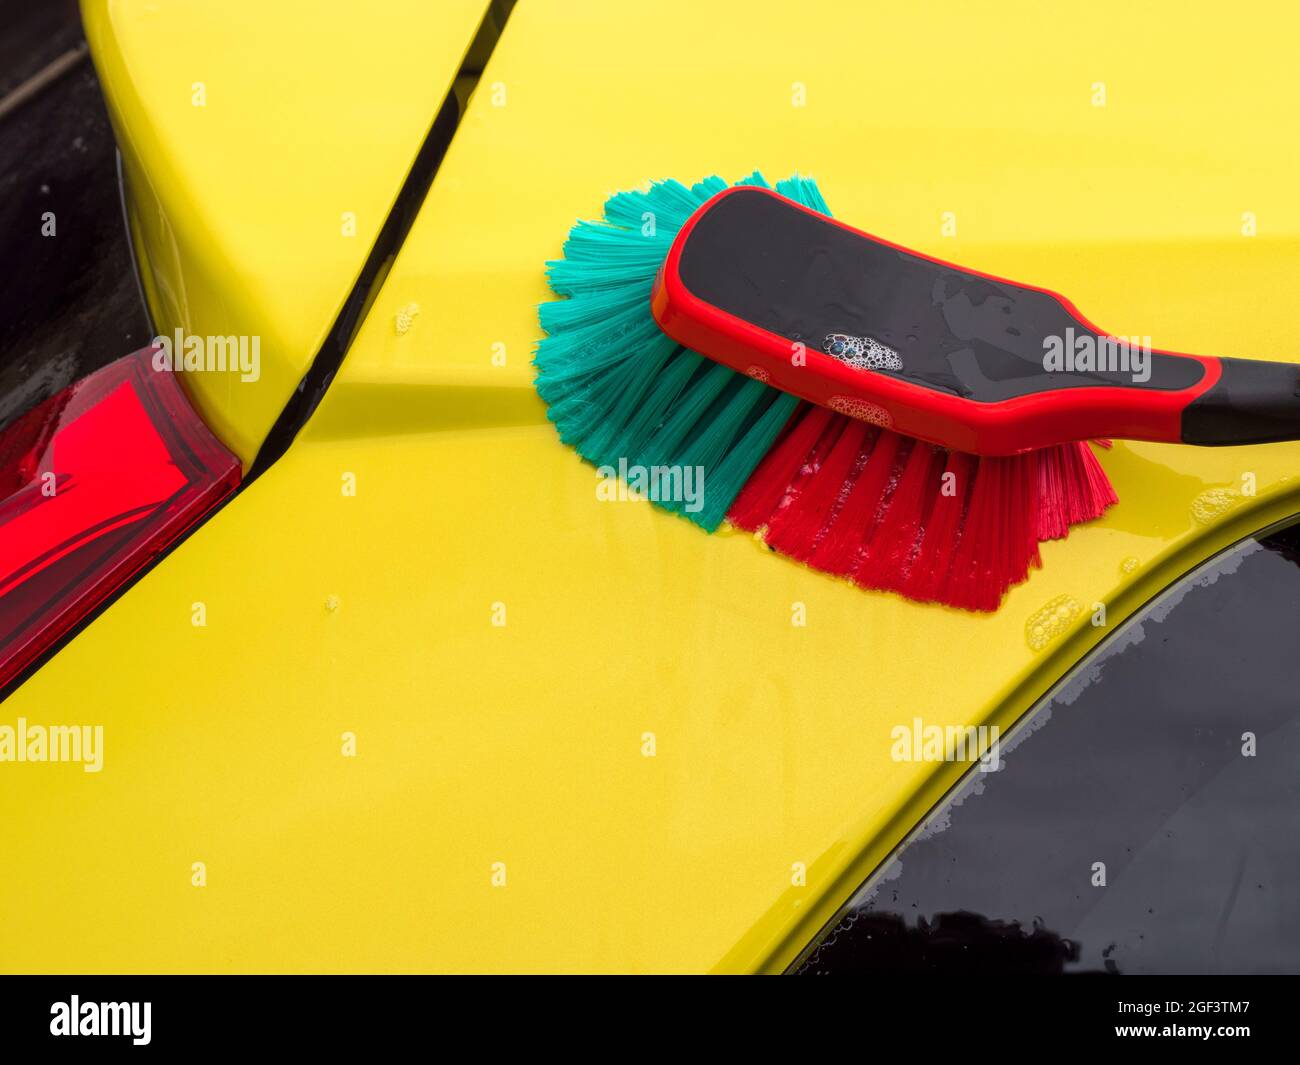 Primo piano POV shot di una spazzola a setole morbide e acqua saponata utilizzata per pulire / lavare la vernice di un'auto gialla. Foto Stock